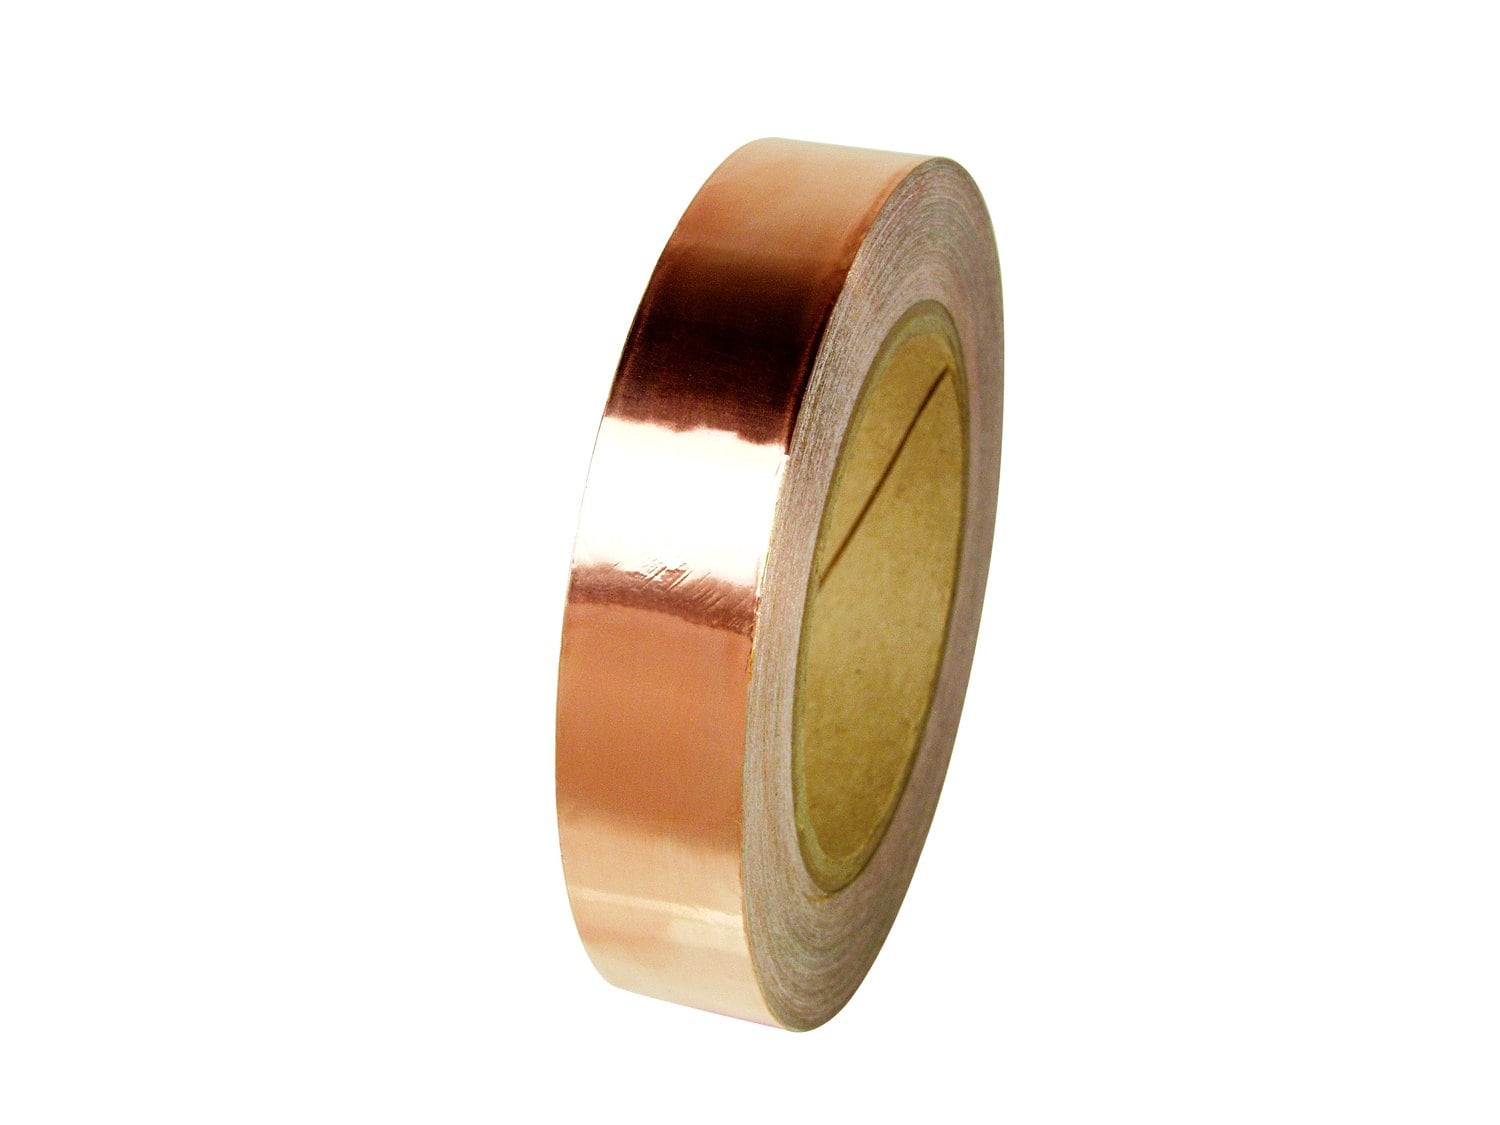 7010297482 - 3M Copper Foil EMI Shielding Tape 1126, 1/2 in x 36 yd, Roll, 18
Rolls/Case